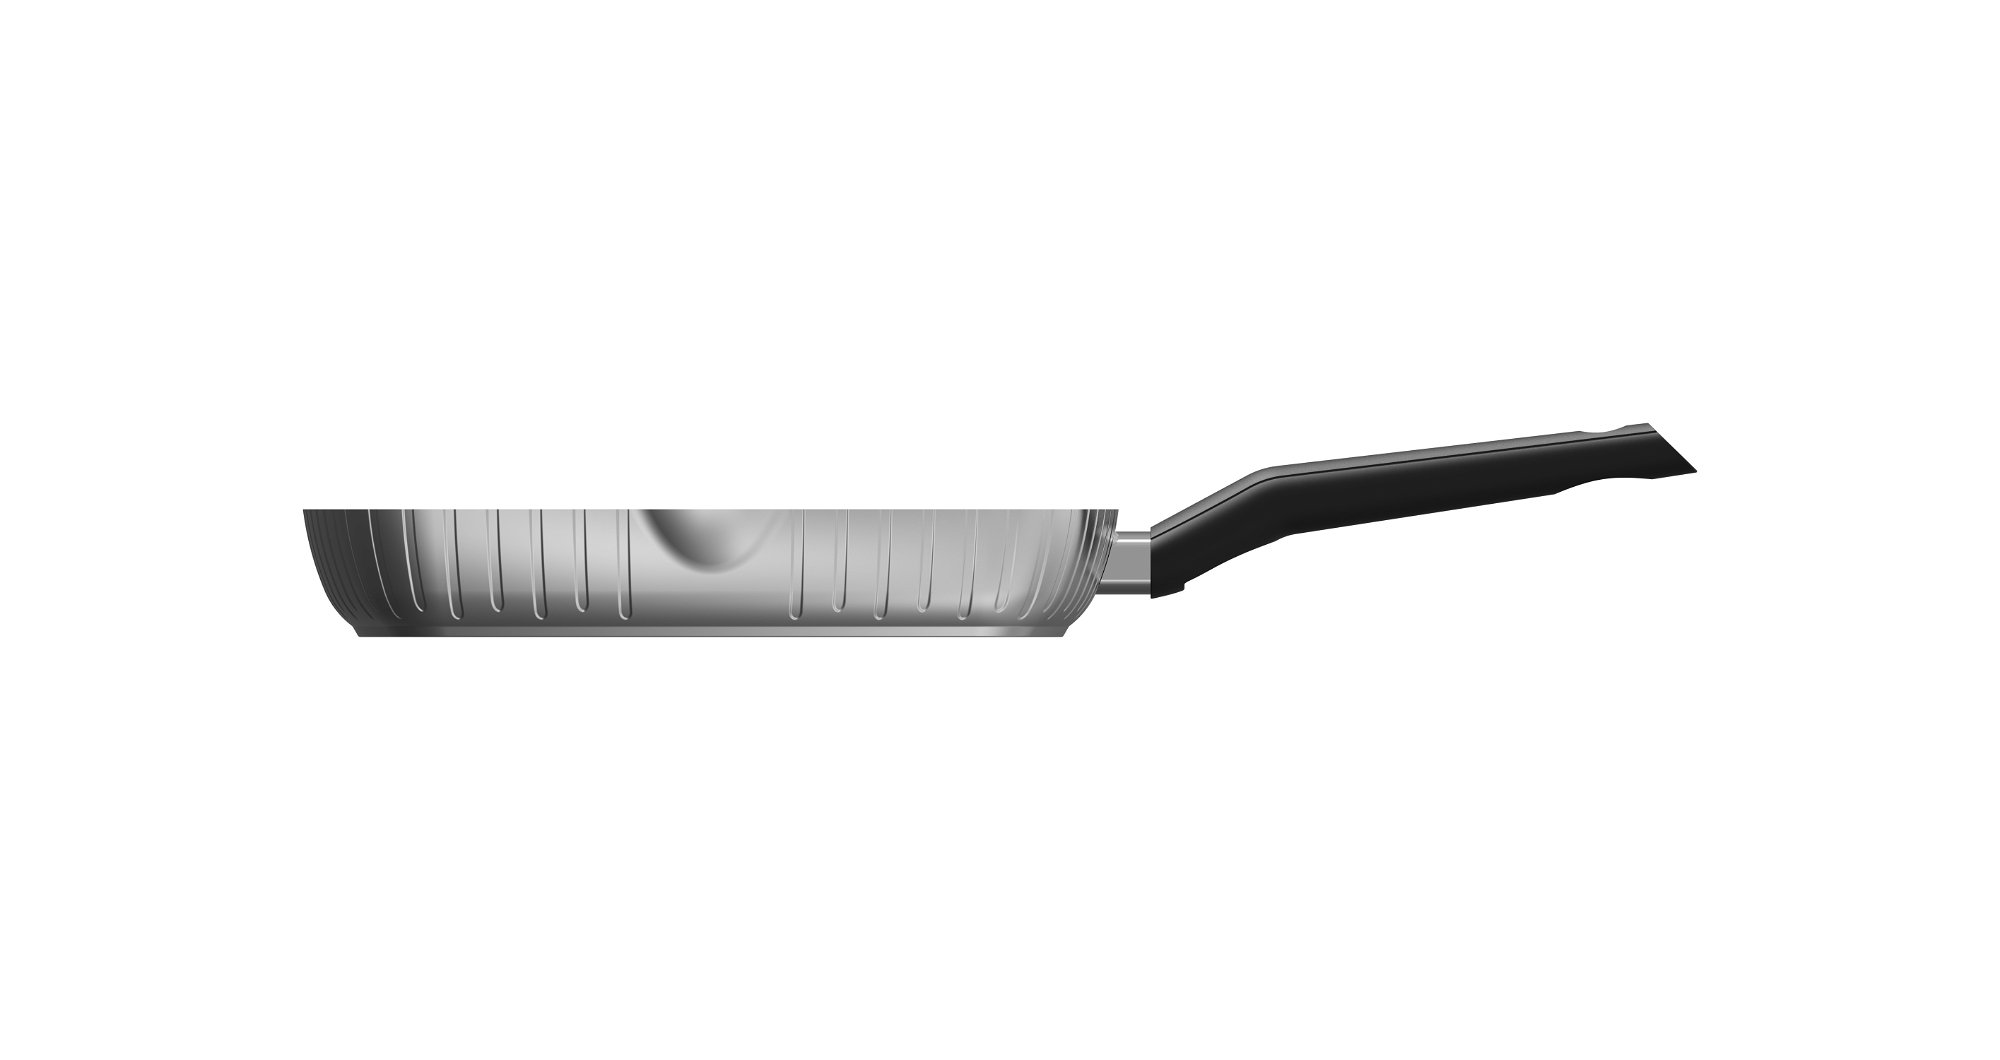 STONELINE® BBQ Griddle Pan 28 cm, 2 Spouts, Non-Stick Pan | Stripes Design